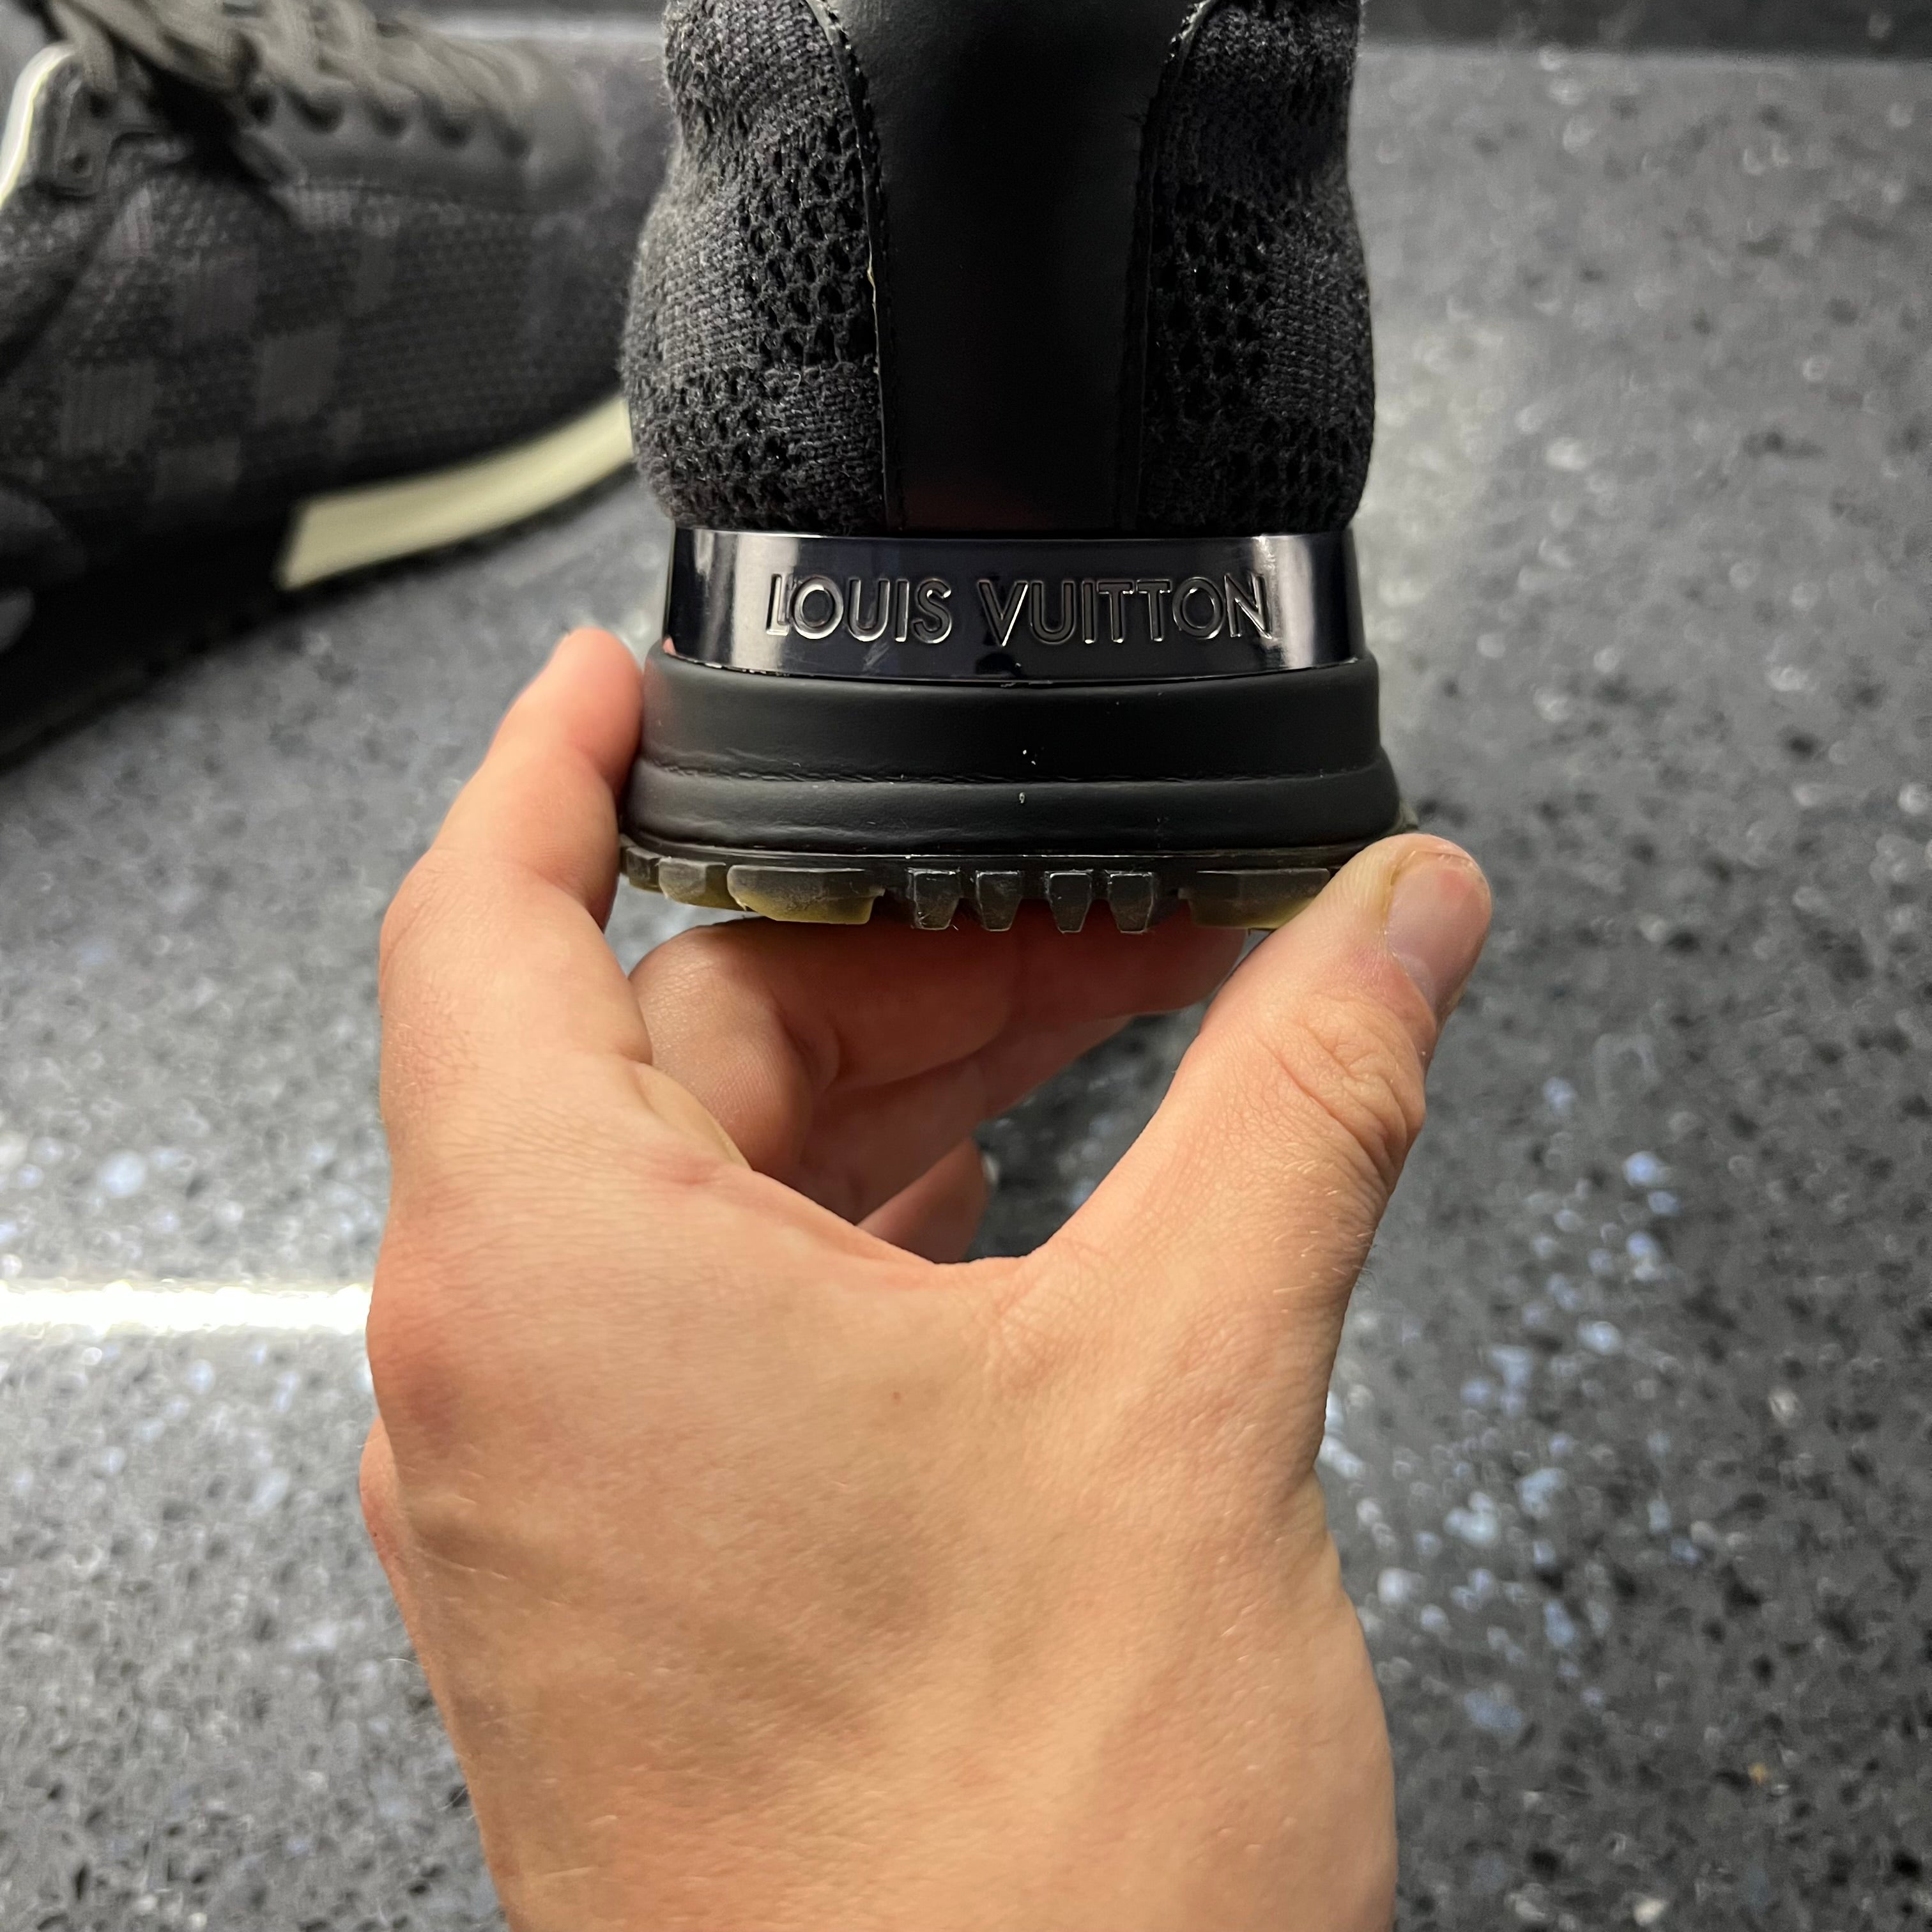 Louis Vuitton Run Away Sneaker BLACK. Size 38.0